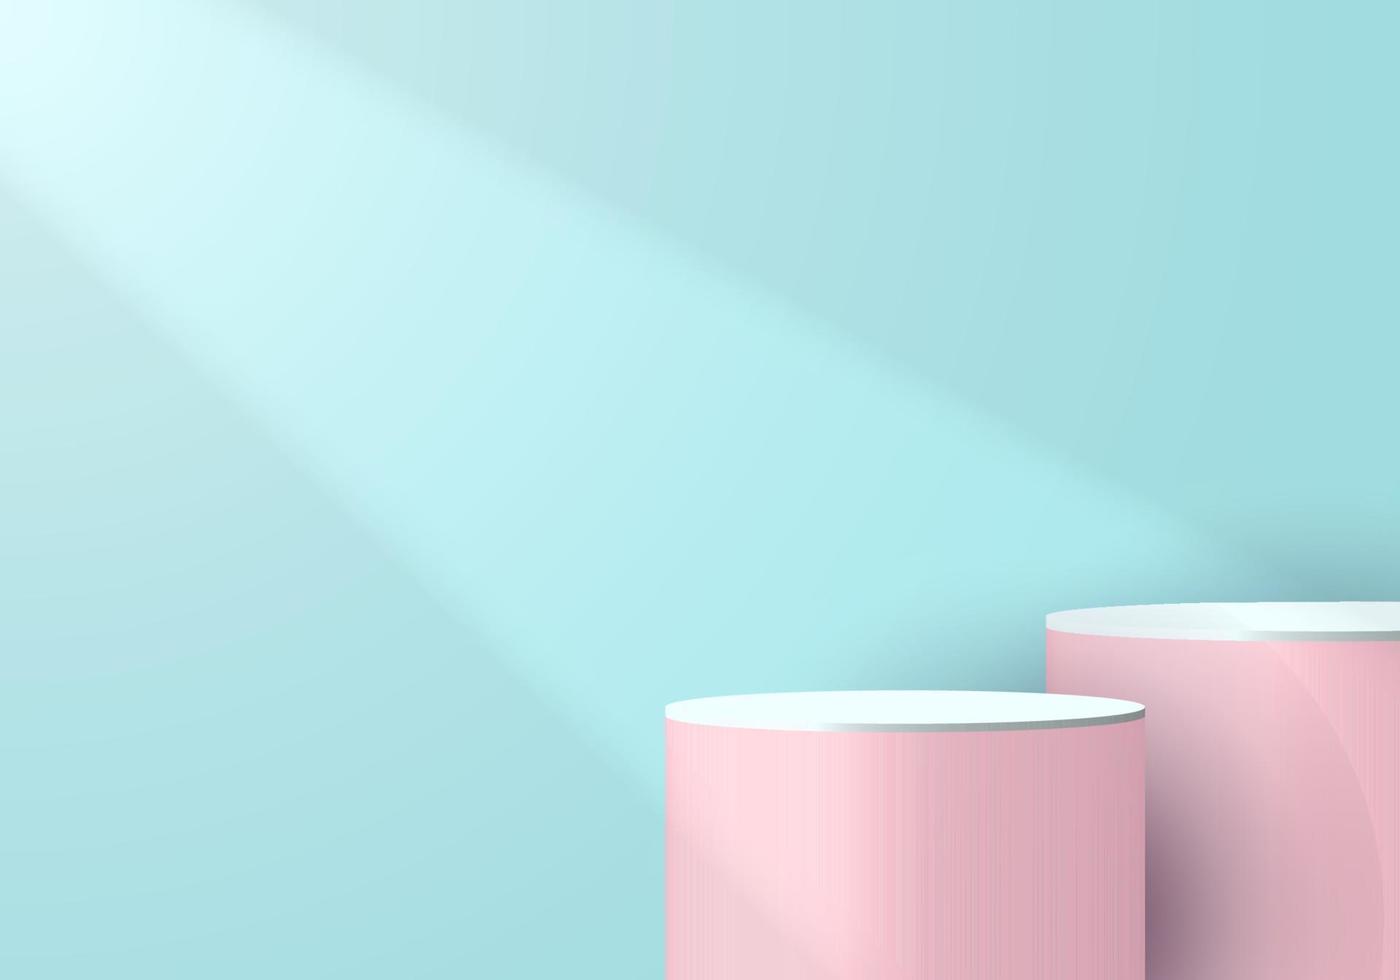 Pedestal de cilindro rosa y blanco 3d en una habitación vacía azul suave con fondo de luz y sombra vector